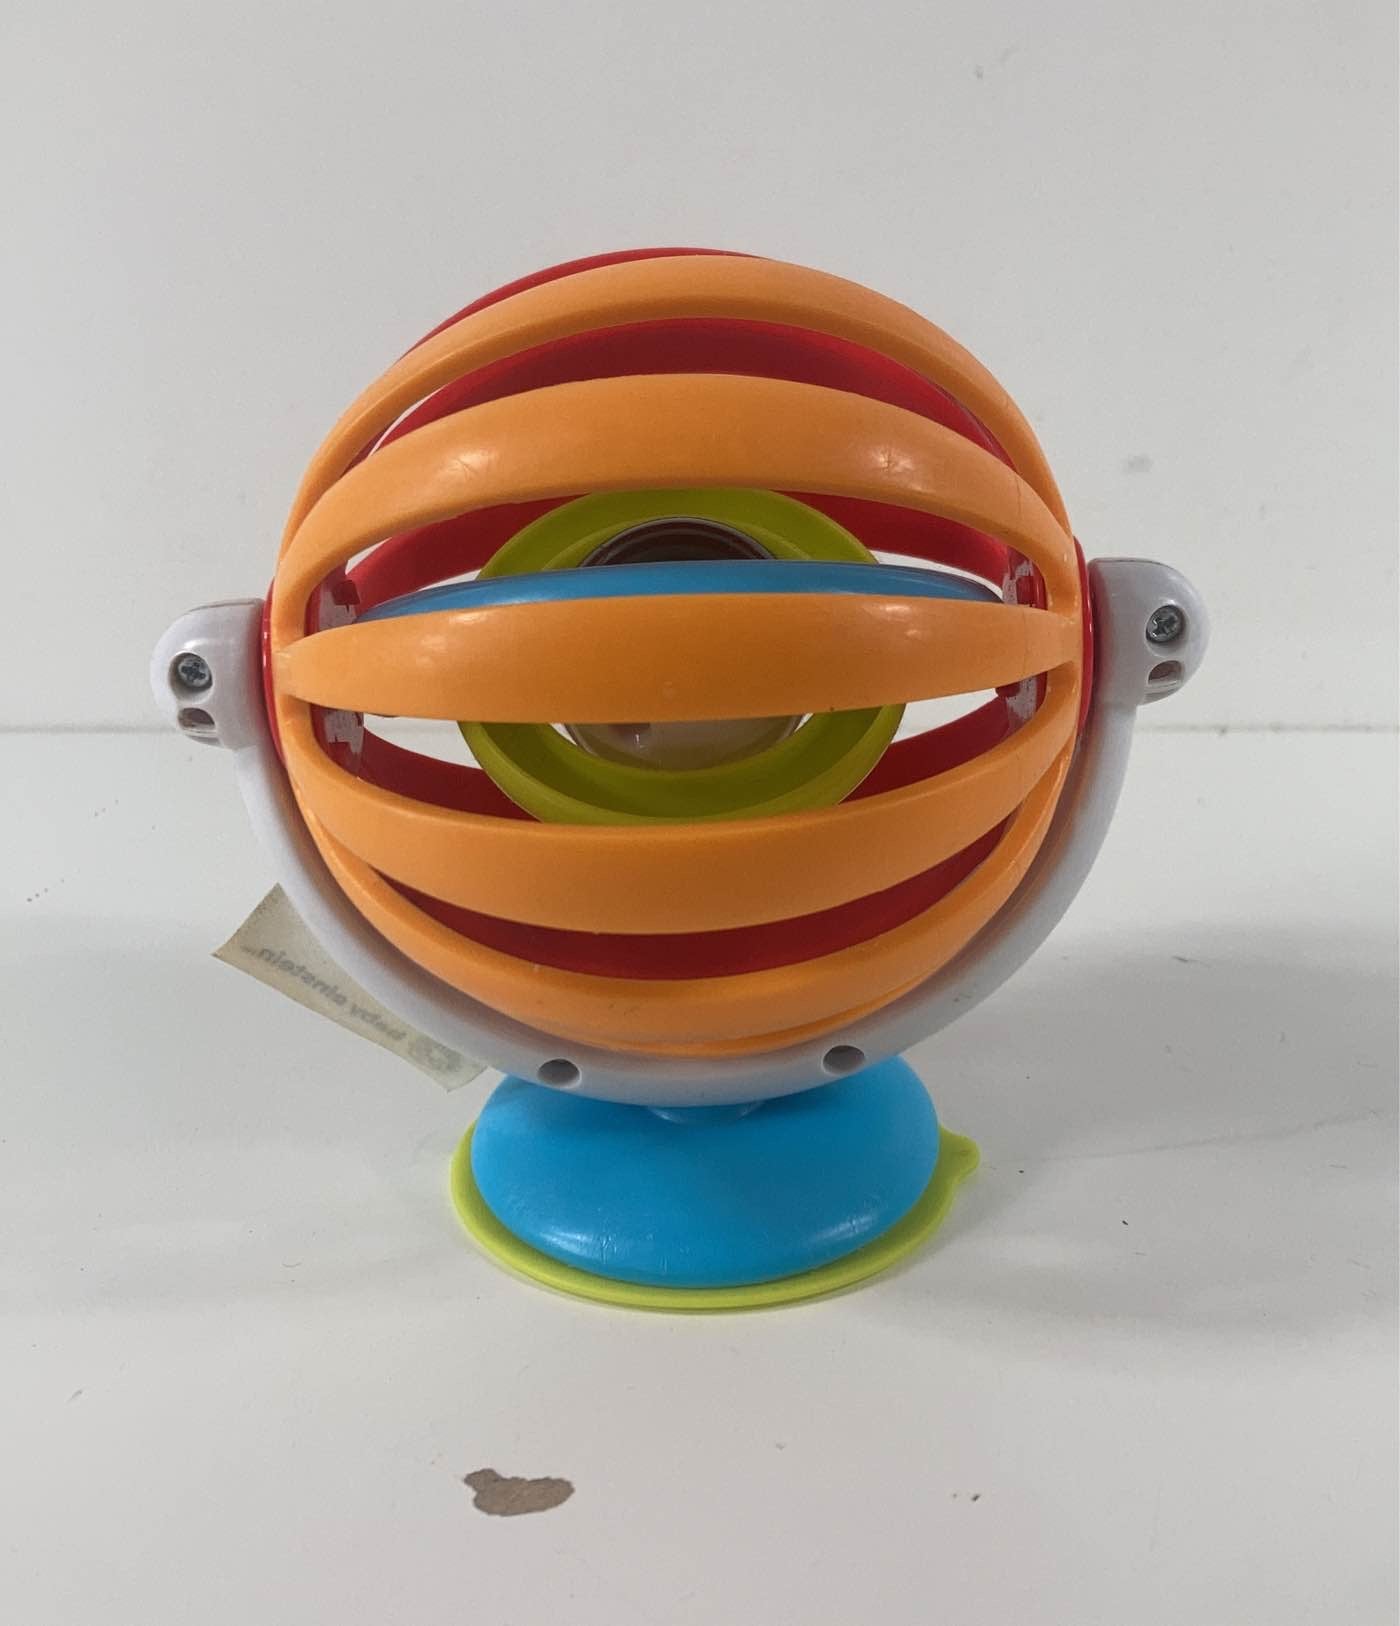 Baby Einstein - Sticky spinner